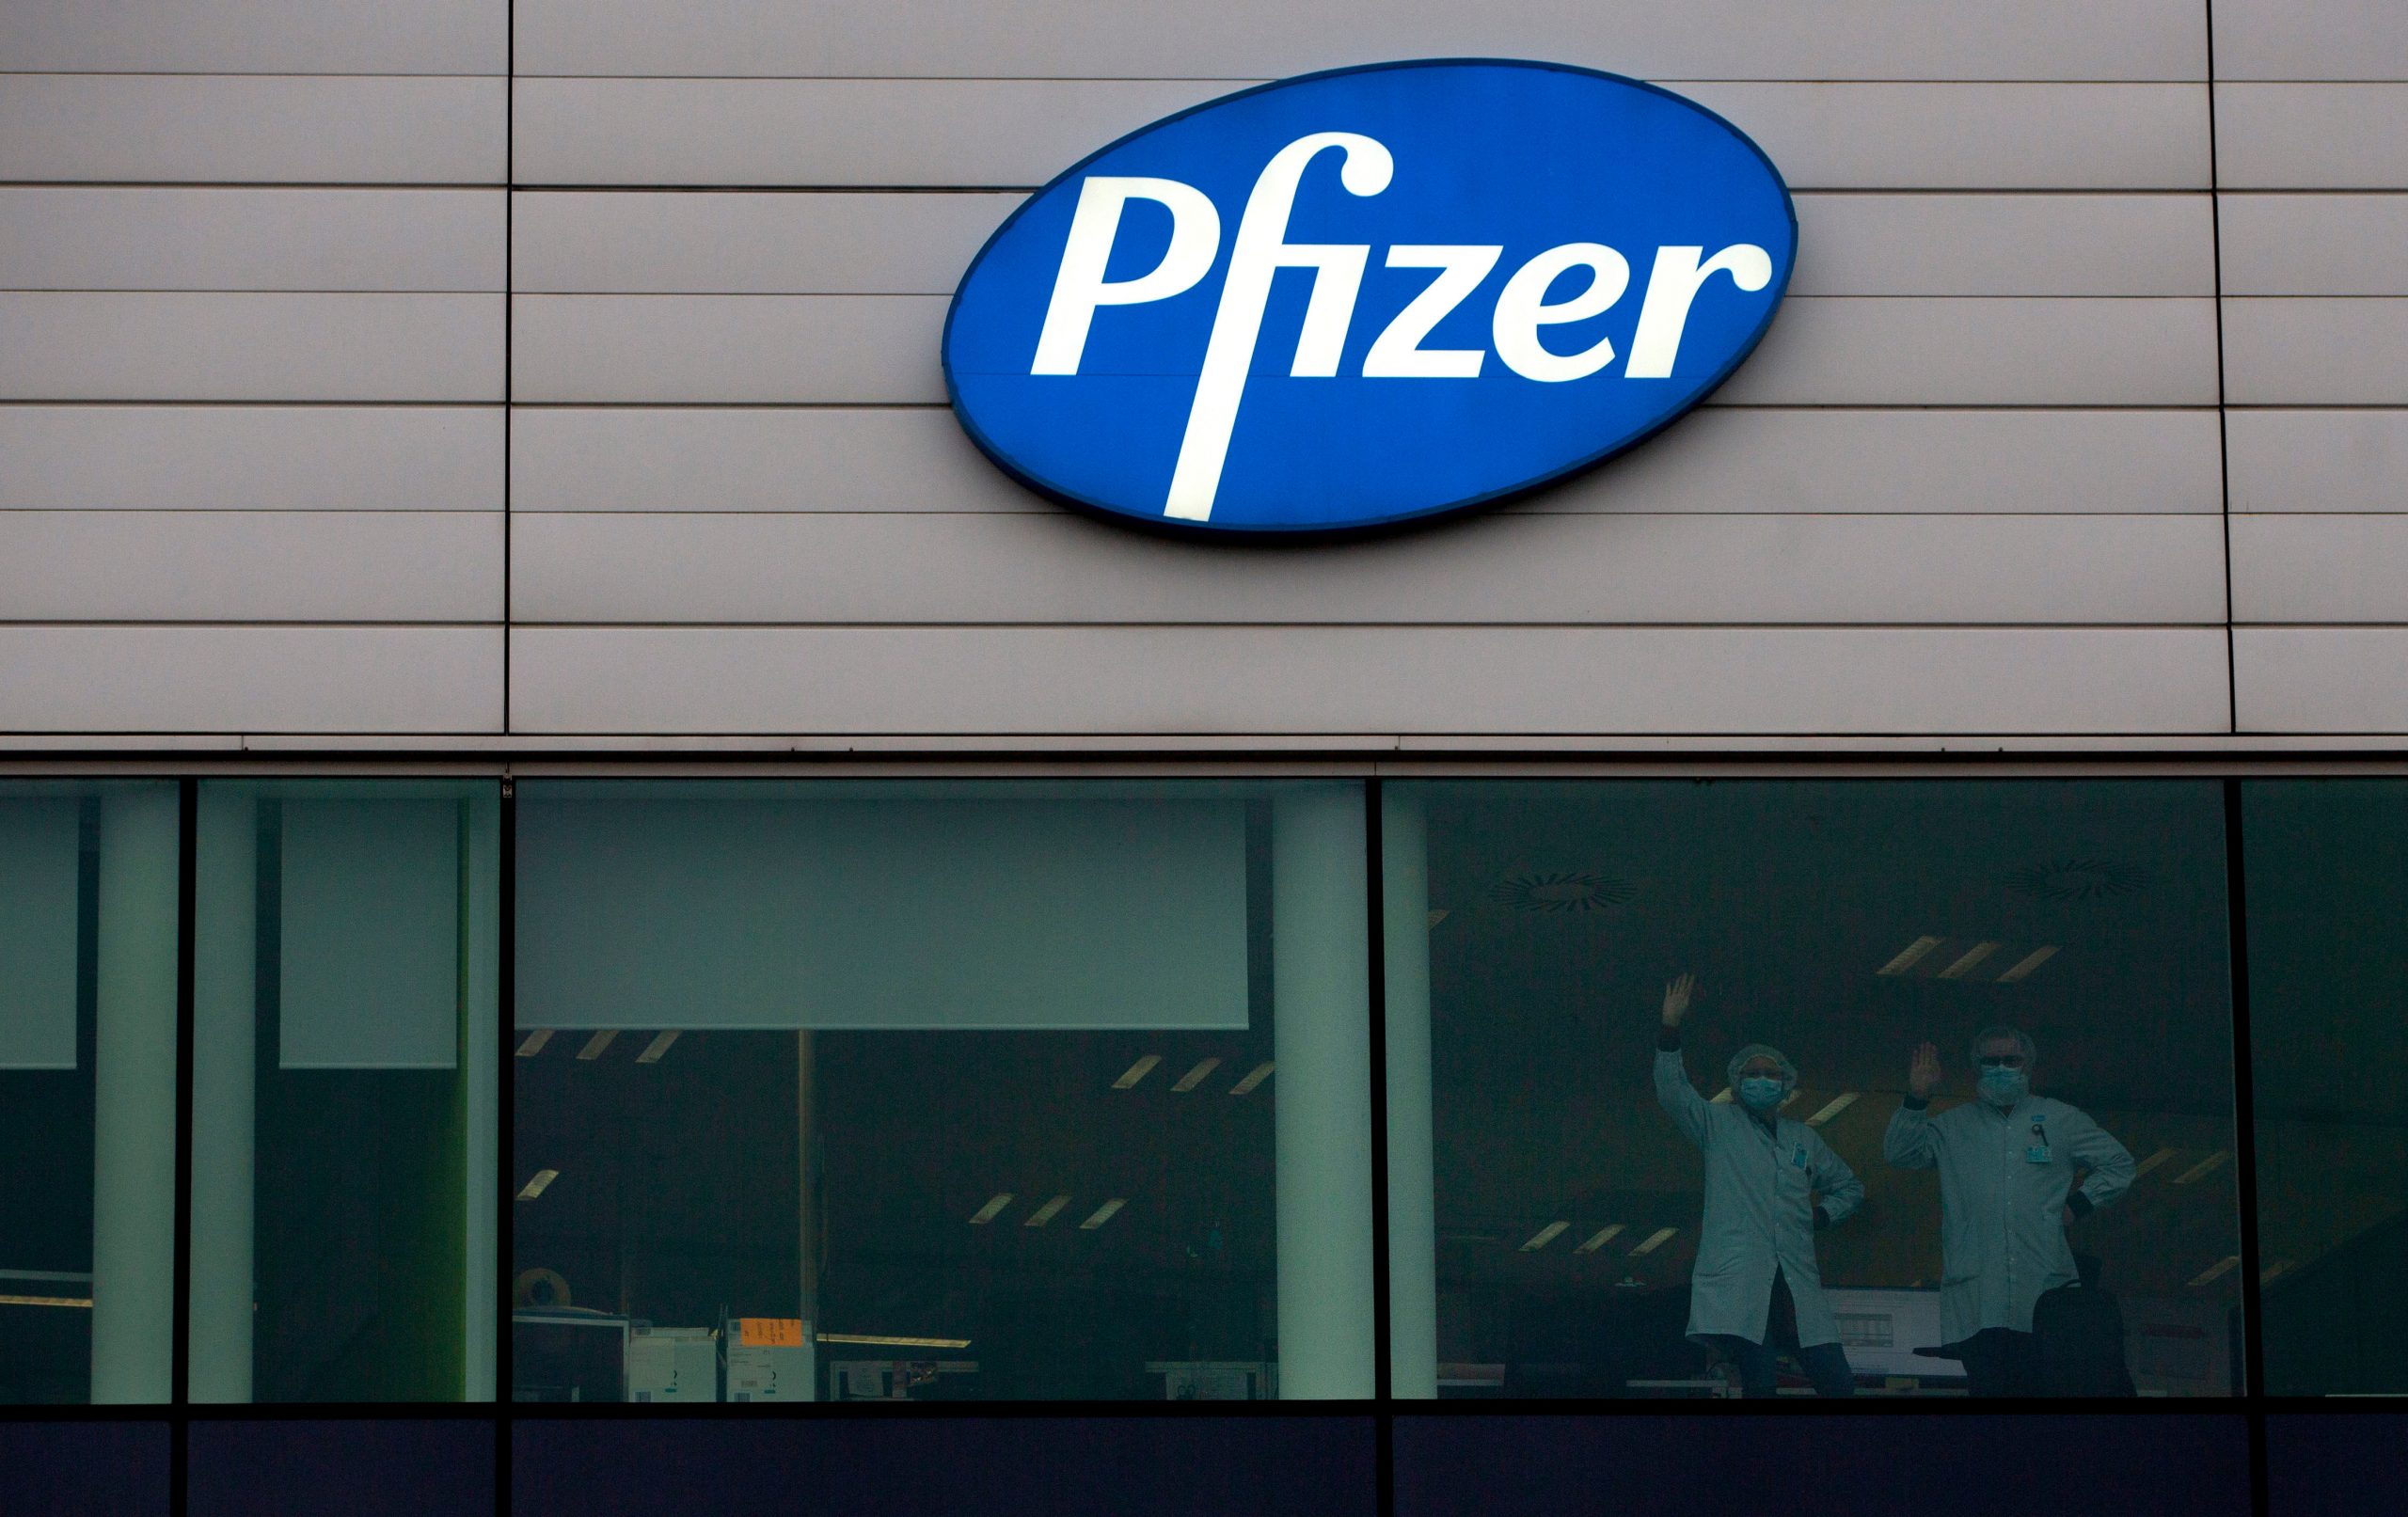 कोरोना वैक्सीन तैयार कर चुकी Pfizer ने कहा- वह भारत सरकार की मदद के लिए प्रतिबद्ध